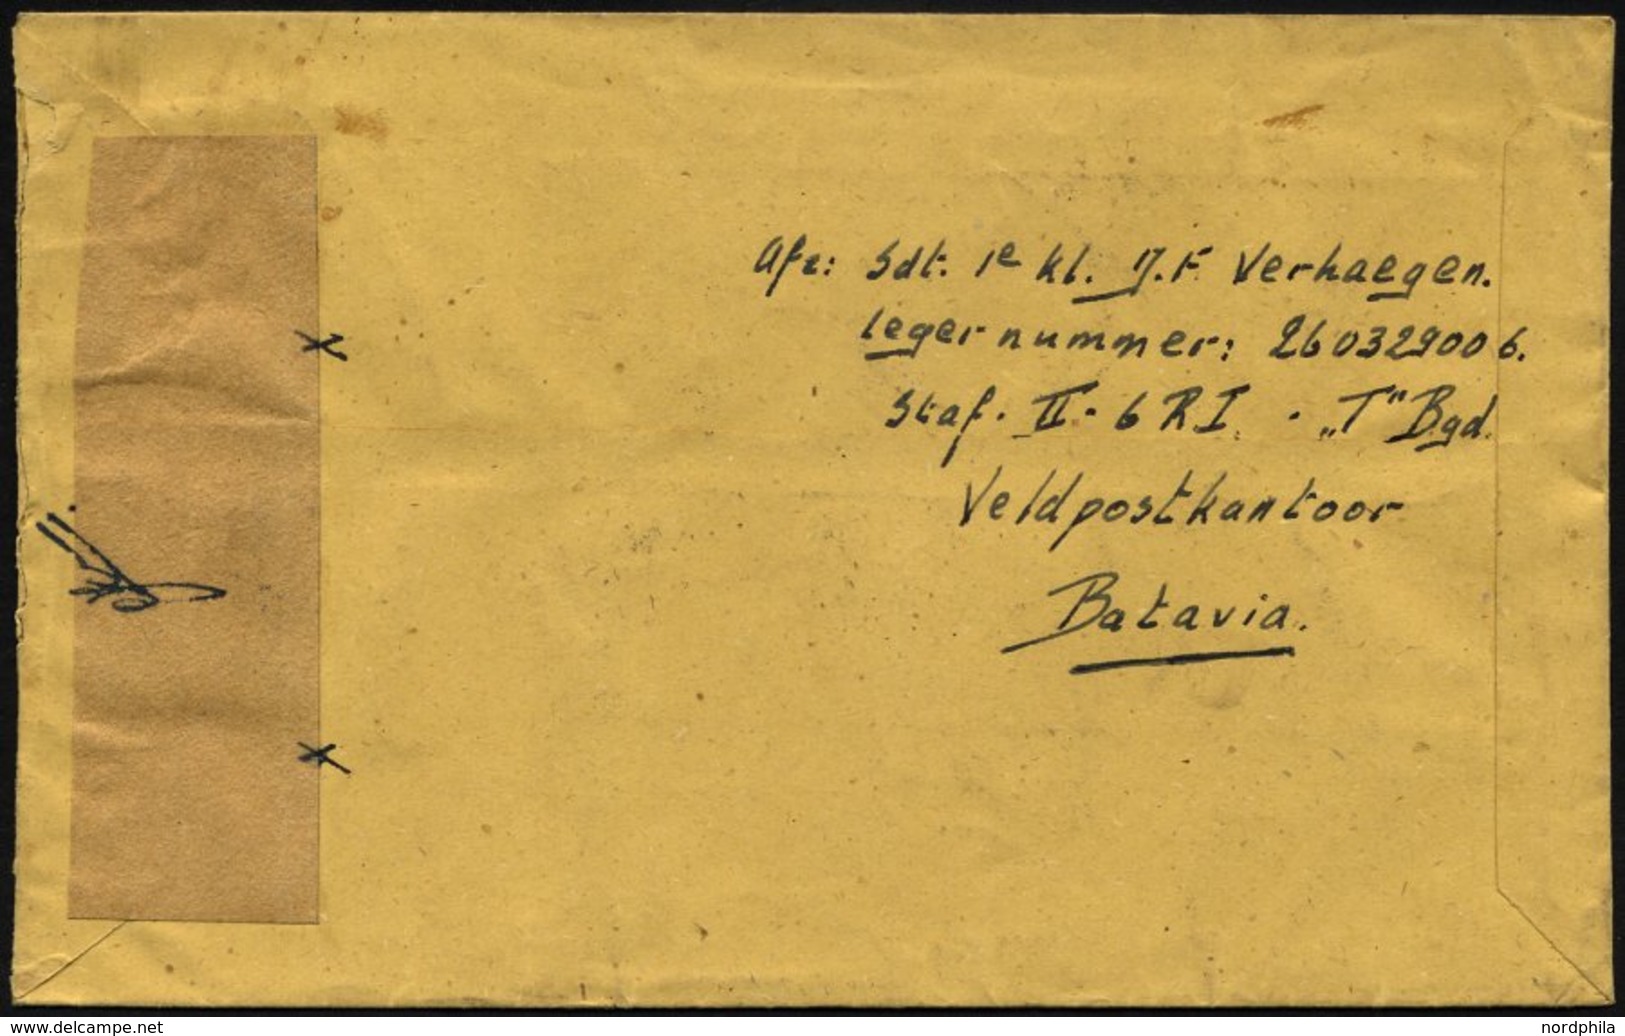 NIEDERLÄNDISCH-INDIEN 1947, K2 VELDPOST-SEMARANG/2/1947 Und Handschriftlich Im Aktiven Dienst Auf Luft-Feldpostbrief Von - Netherlands Indies